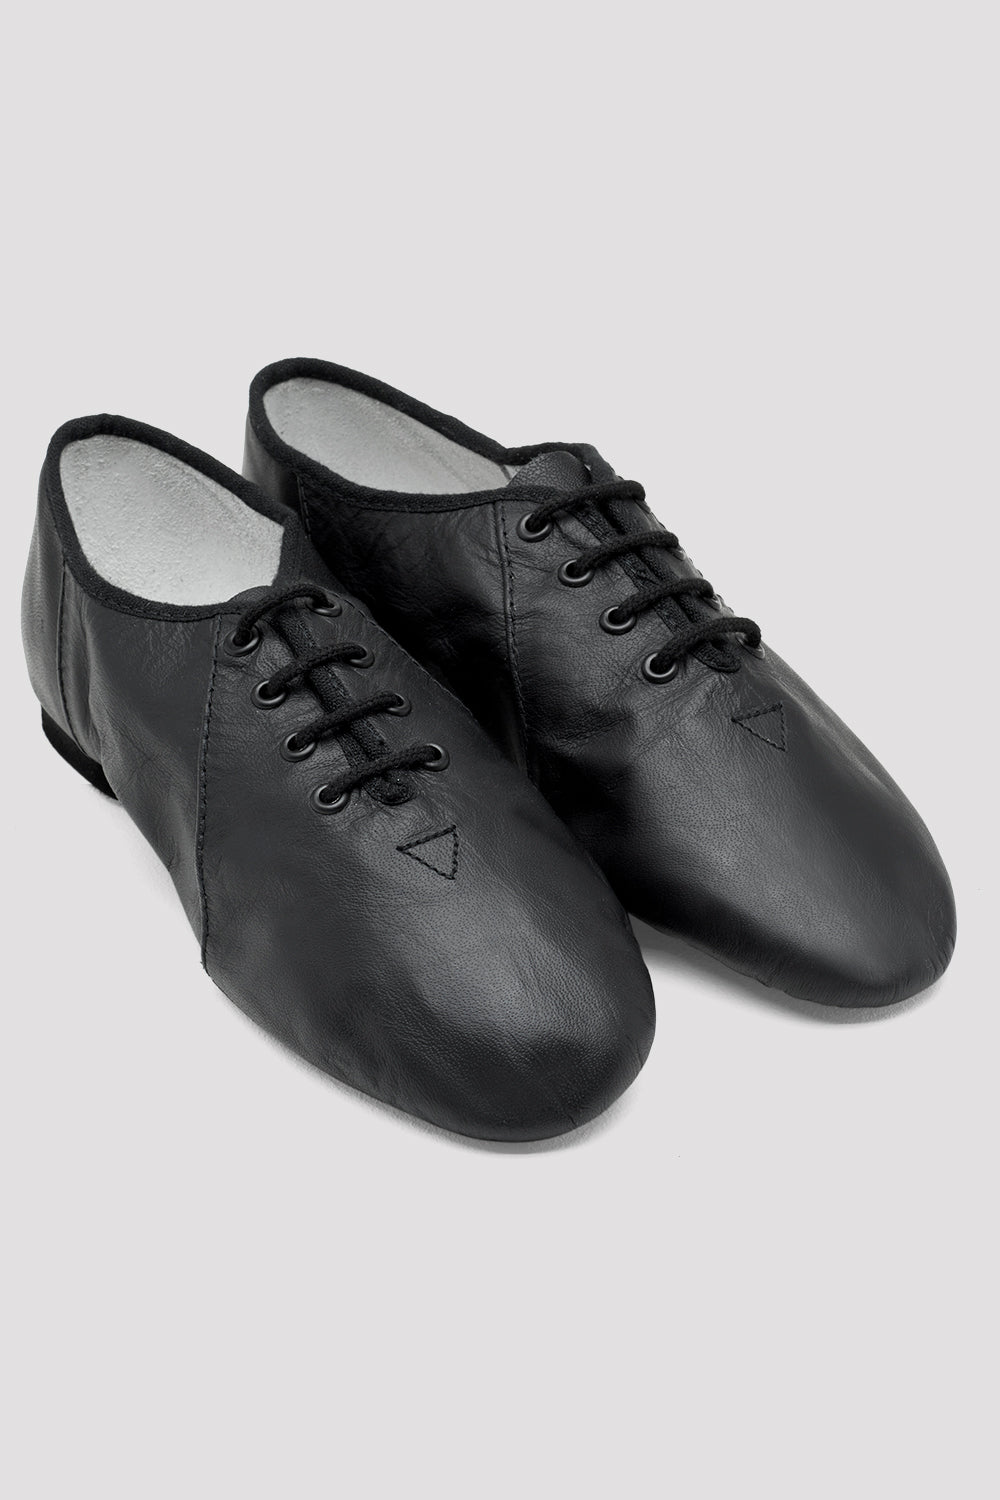 Jazzsoft Leather Adult Jazz Shoe